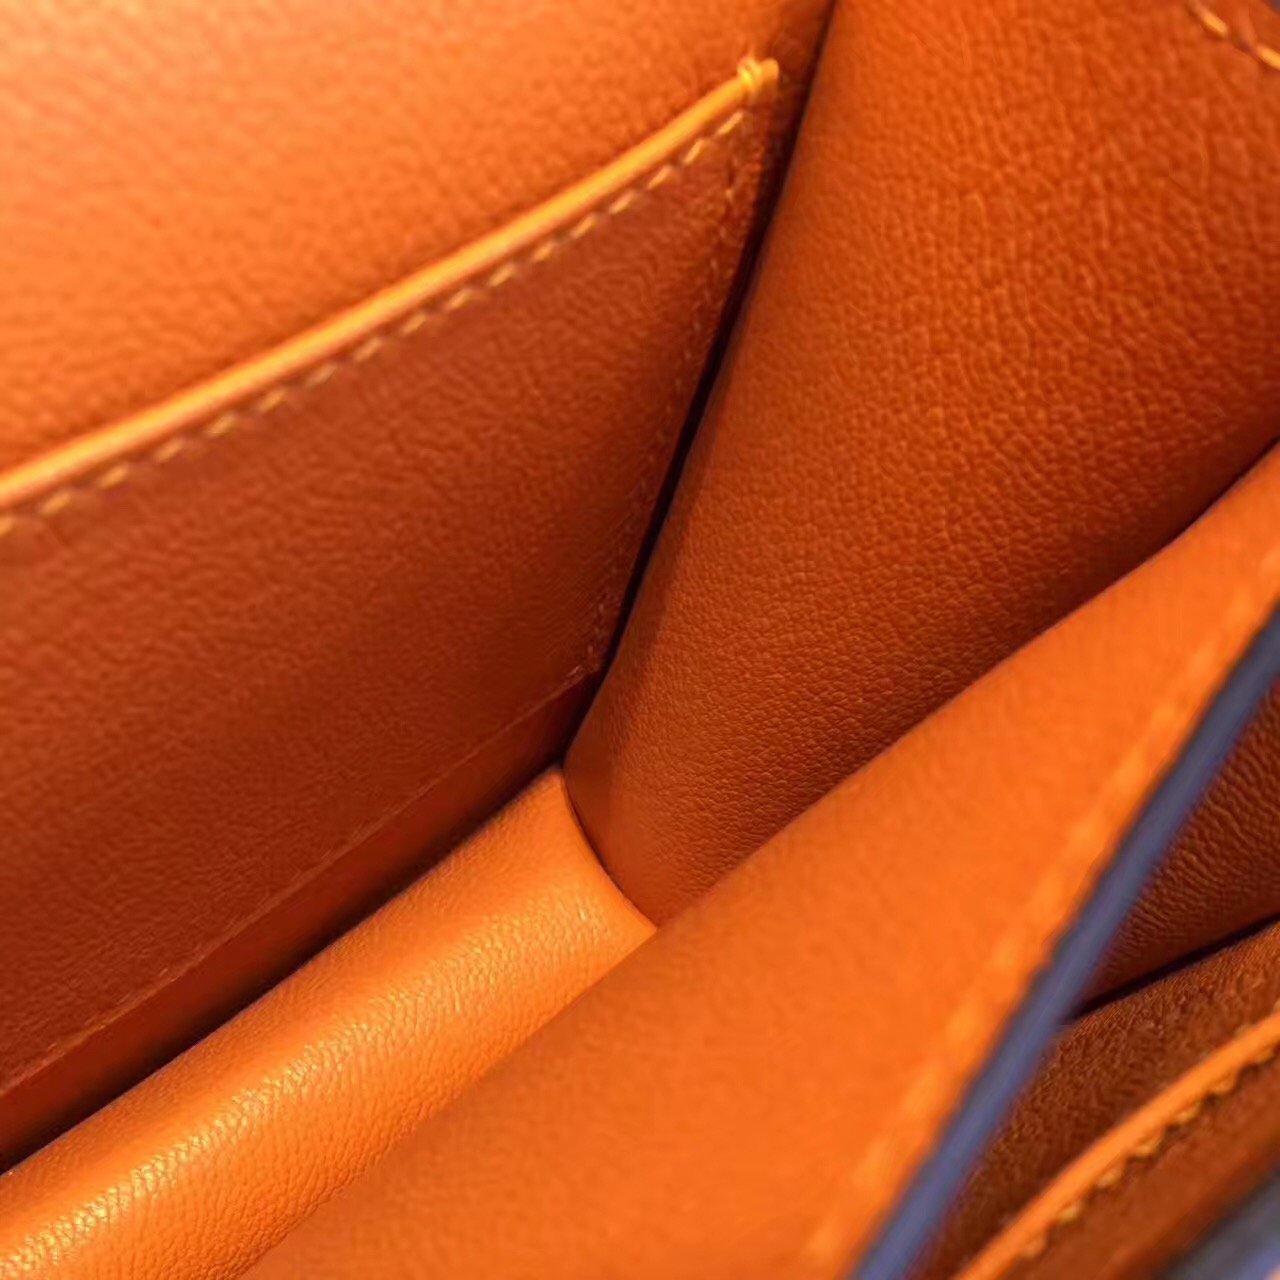 Hermes original epsom leather constance bag C23 orange